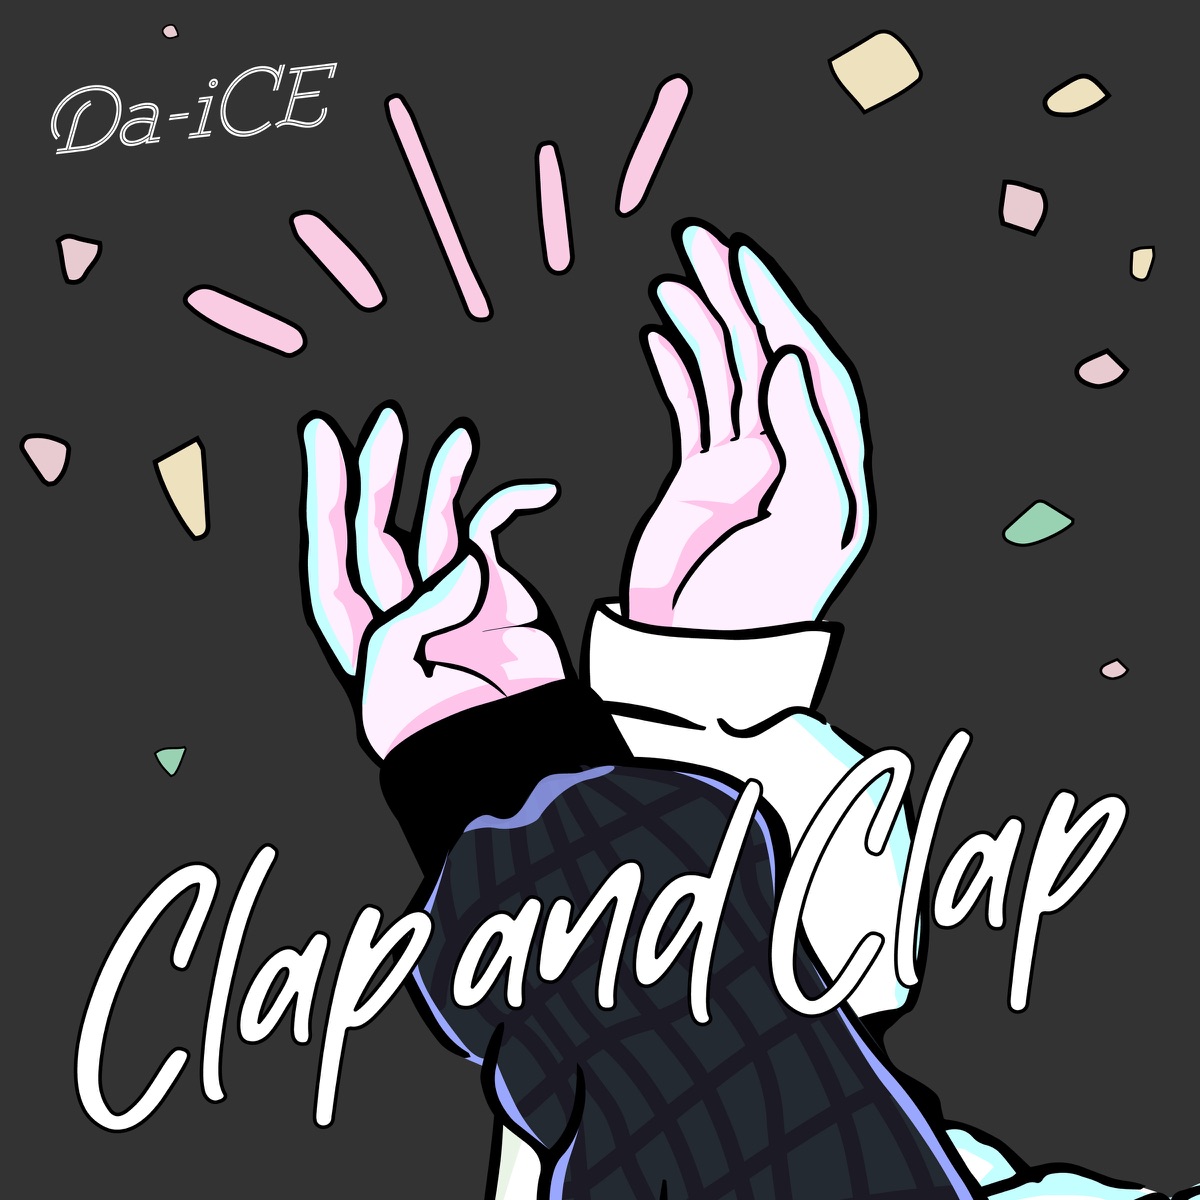 『Da-iCE - Clap and Clap 歌詞』収録の『Clap and Clap』ジャケット